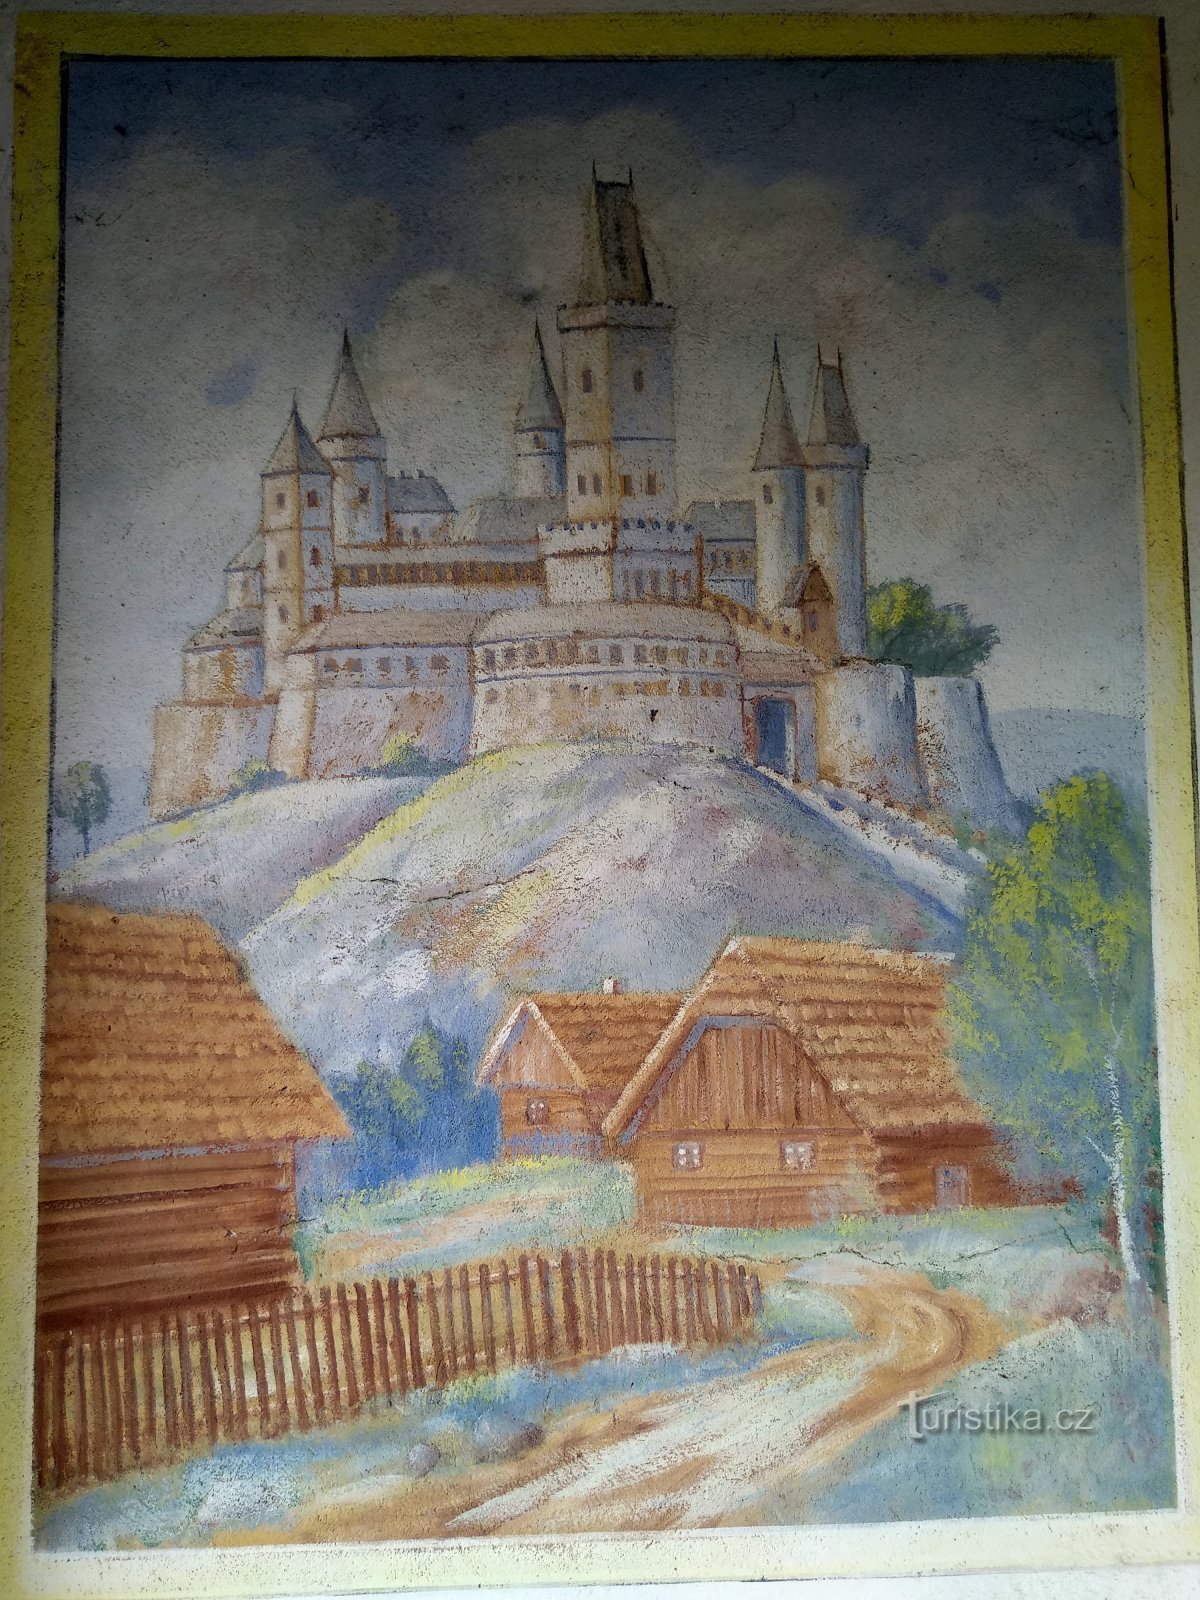 фреска в селі Подграді - зображення замку Веліш